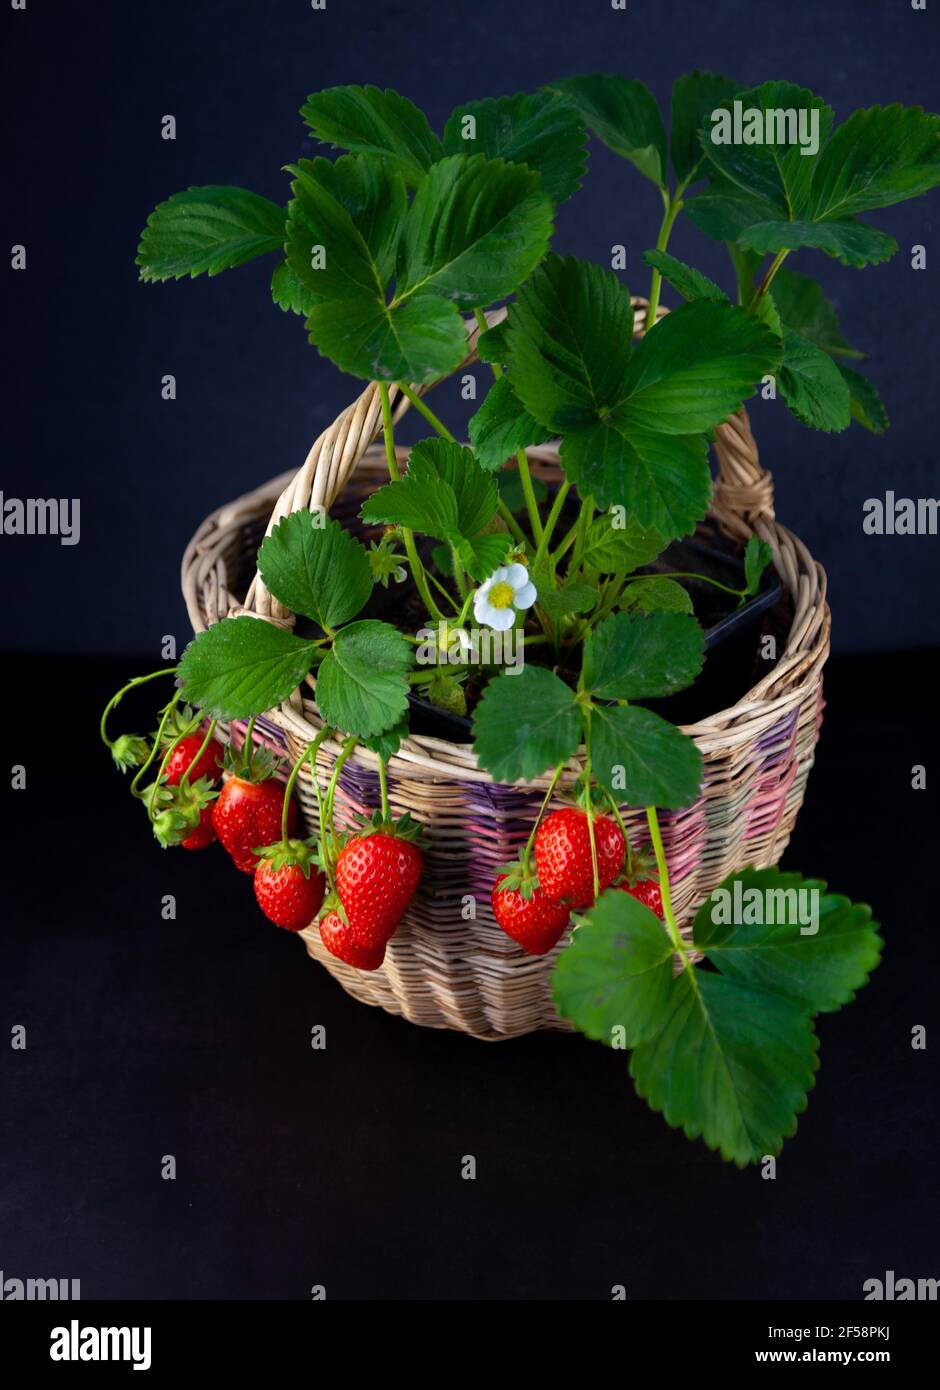 Erdbeerbusch in einem Korb auf schwarzem Hintergrund mit Platz für Text.  Erdbeerernte anbauen. Rote Beere Erdbeere, Blätter, Blume. Wächst zu Hause  in einem Topf. Die Beeren auf dem Ast, das Stillleben Stockfotografie -